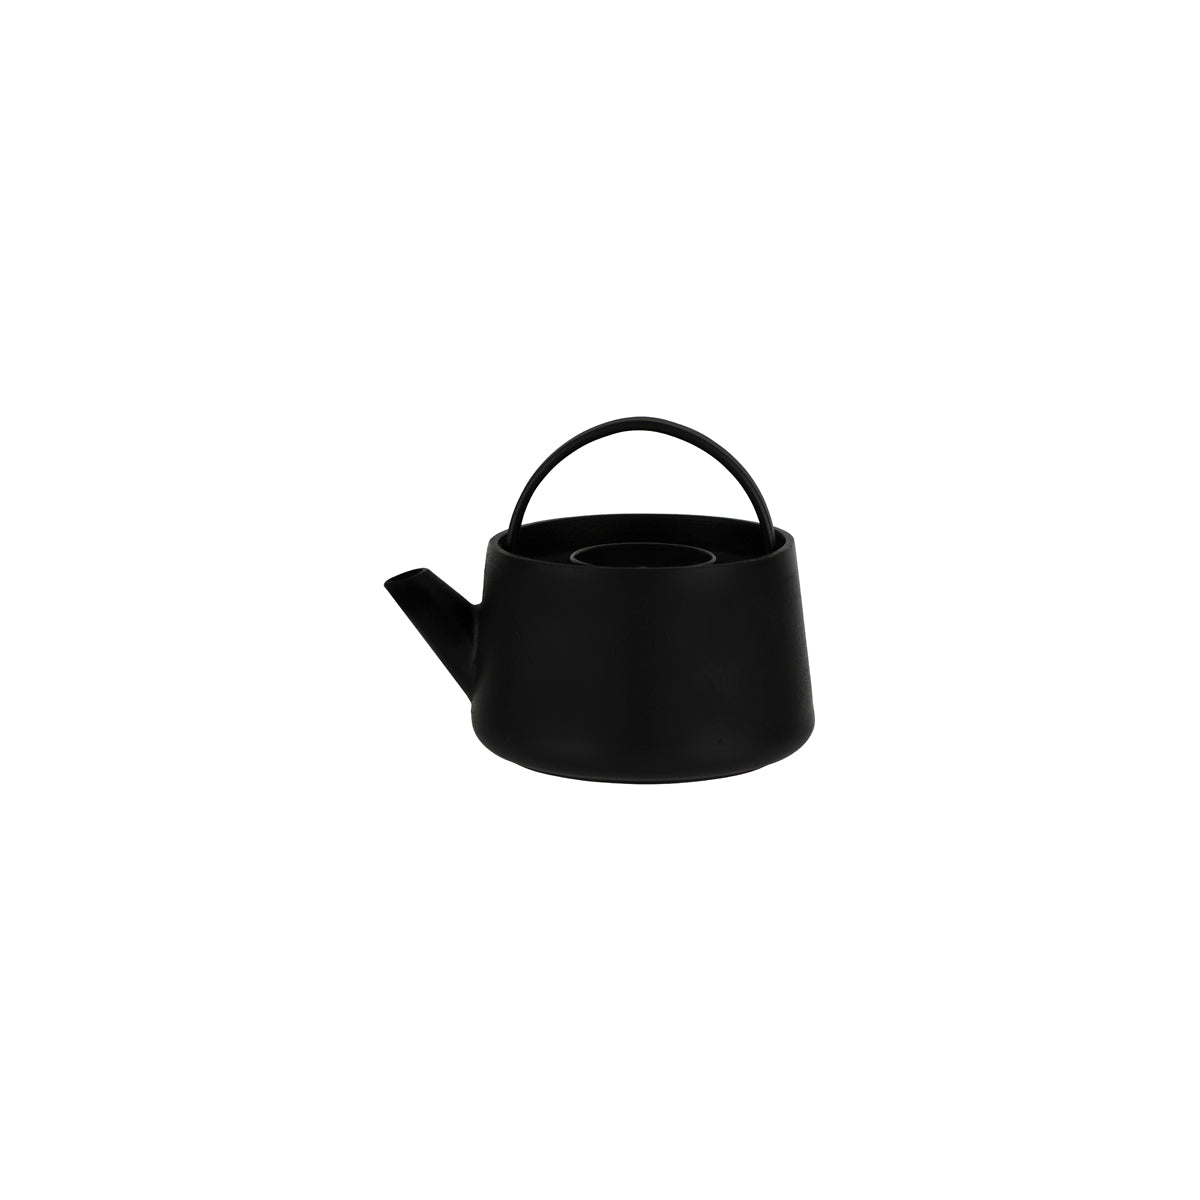 SERAXB6820002 Serax Serax Inku Black Cast Iron Teapot 170x145mm Tomkin Australia Hospitality Supplies